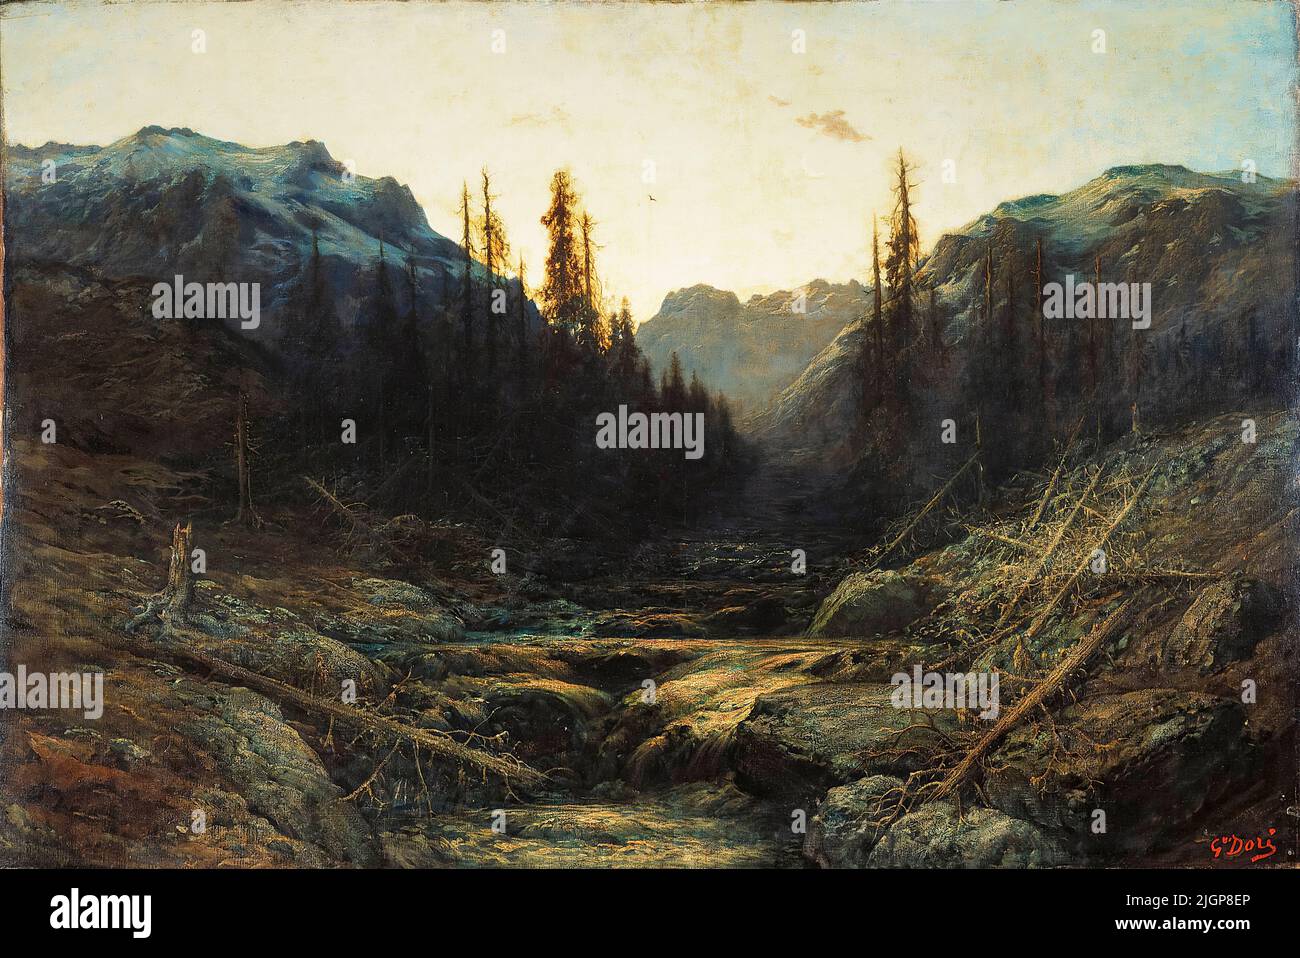 Gustave Doré, corriente en las montañas al anochecer, pintura de paisajes al óleo sobre lienzo, 1850-1883 Foto de stock